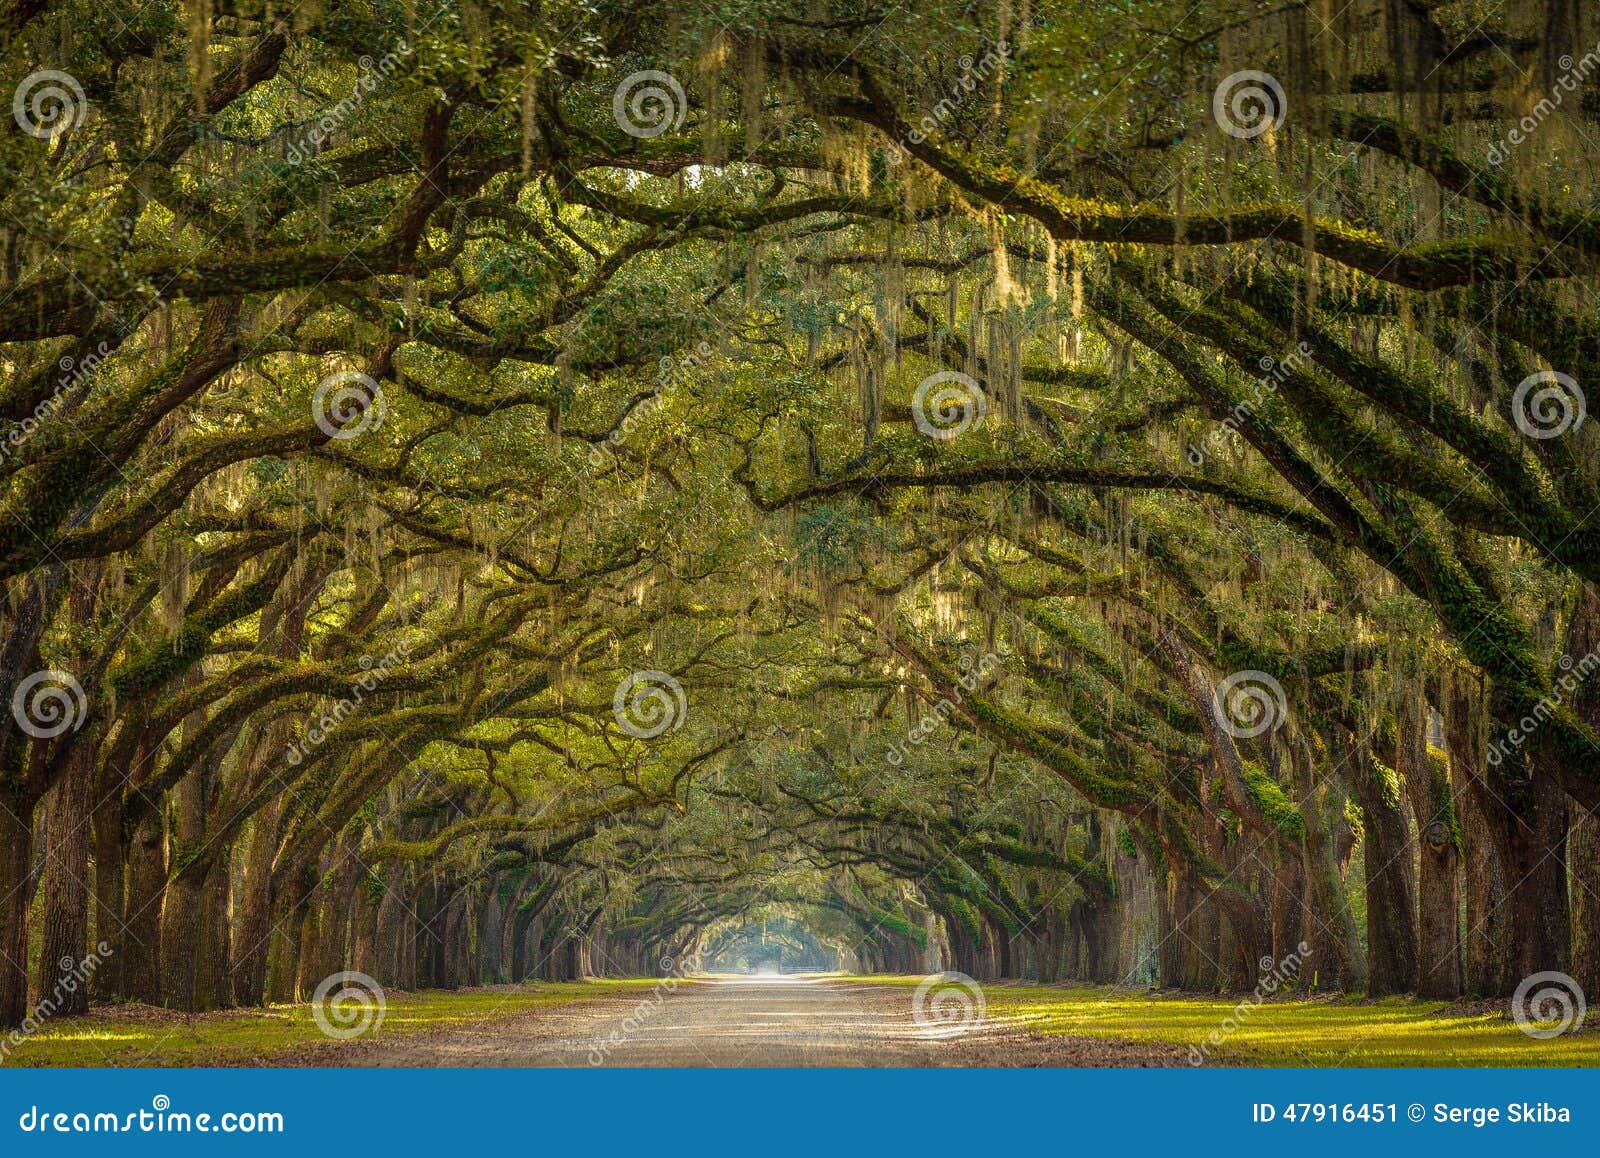 wormsloe plantation oak trees